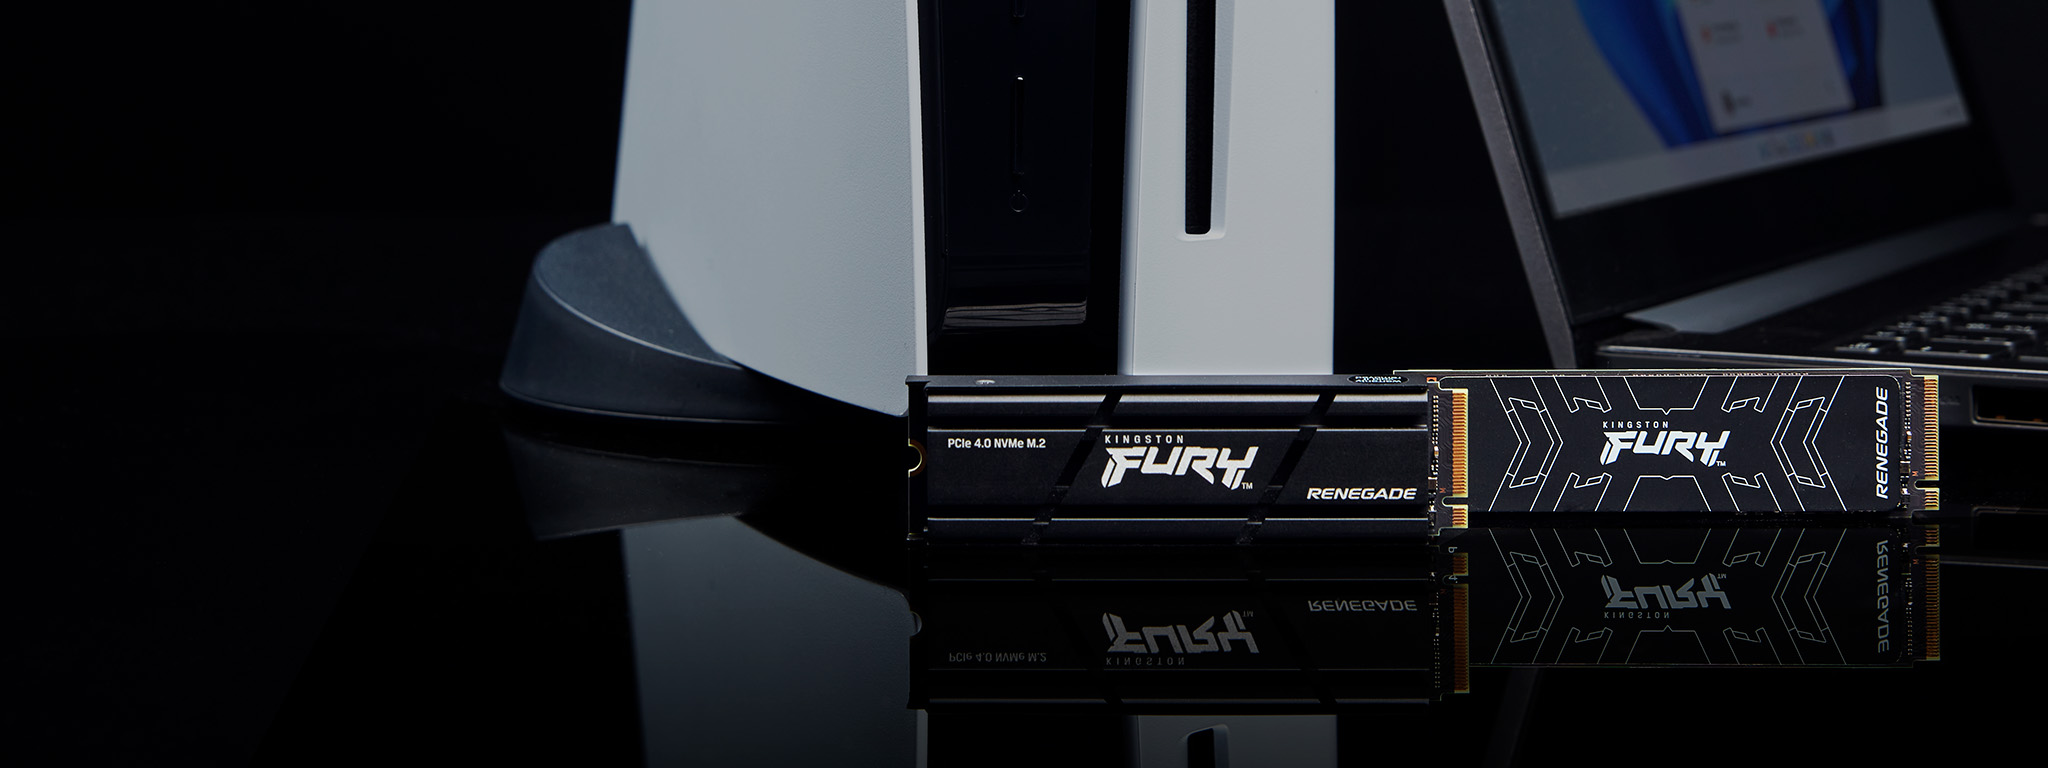 Due SSD Kingston FURY Renegade, con e senza dissipatore, accanto a una PS5 e a un laptop.